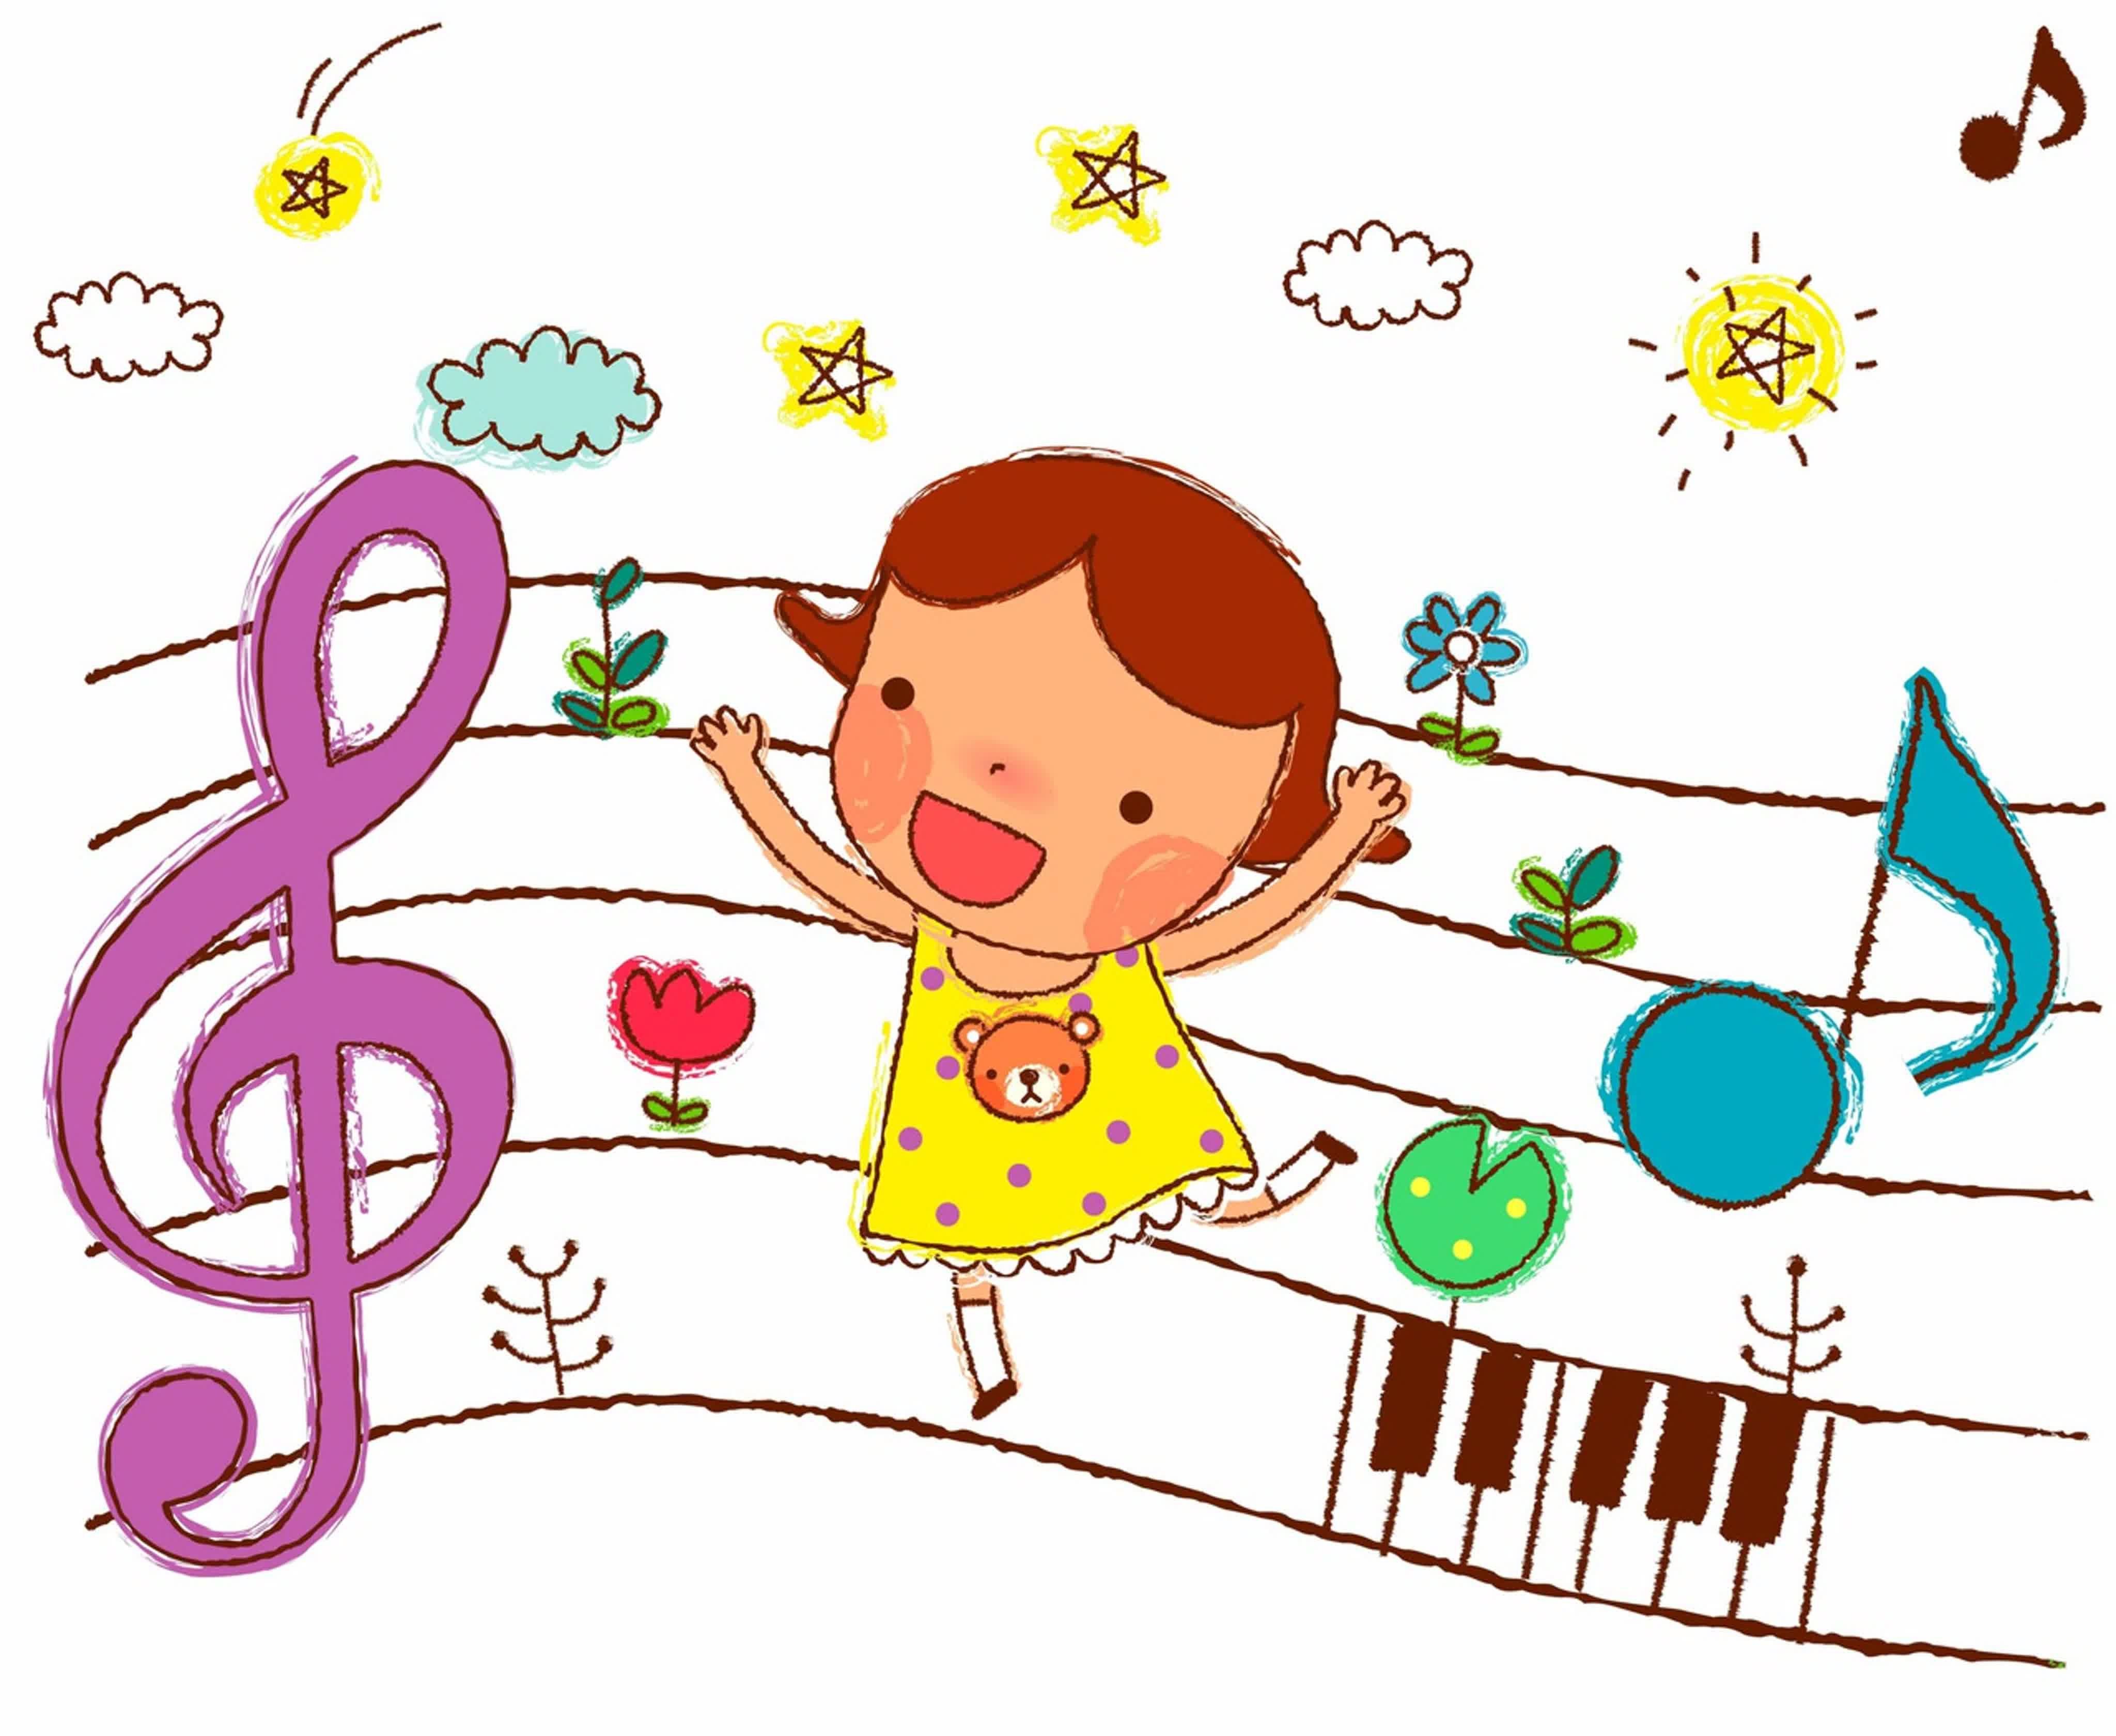 Песни быстрые для детей: Зажигательная танцевальная музыка для детей